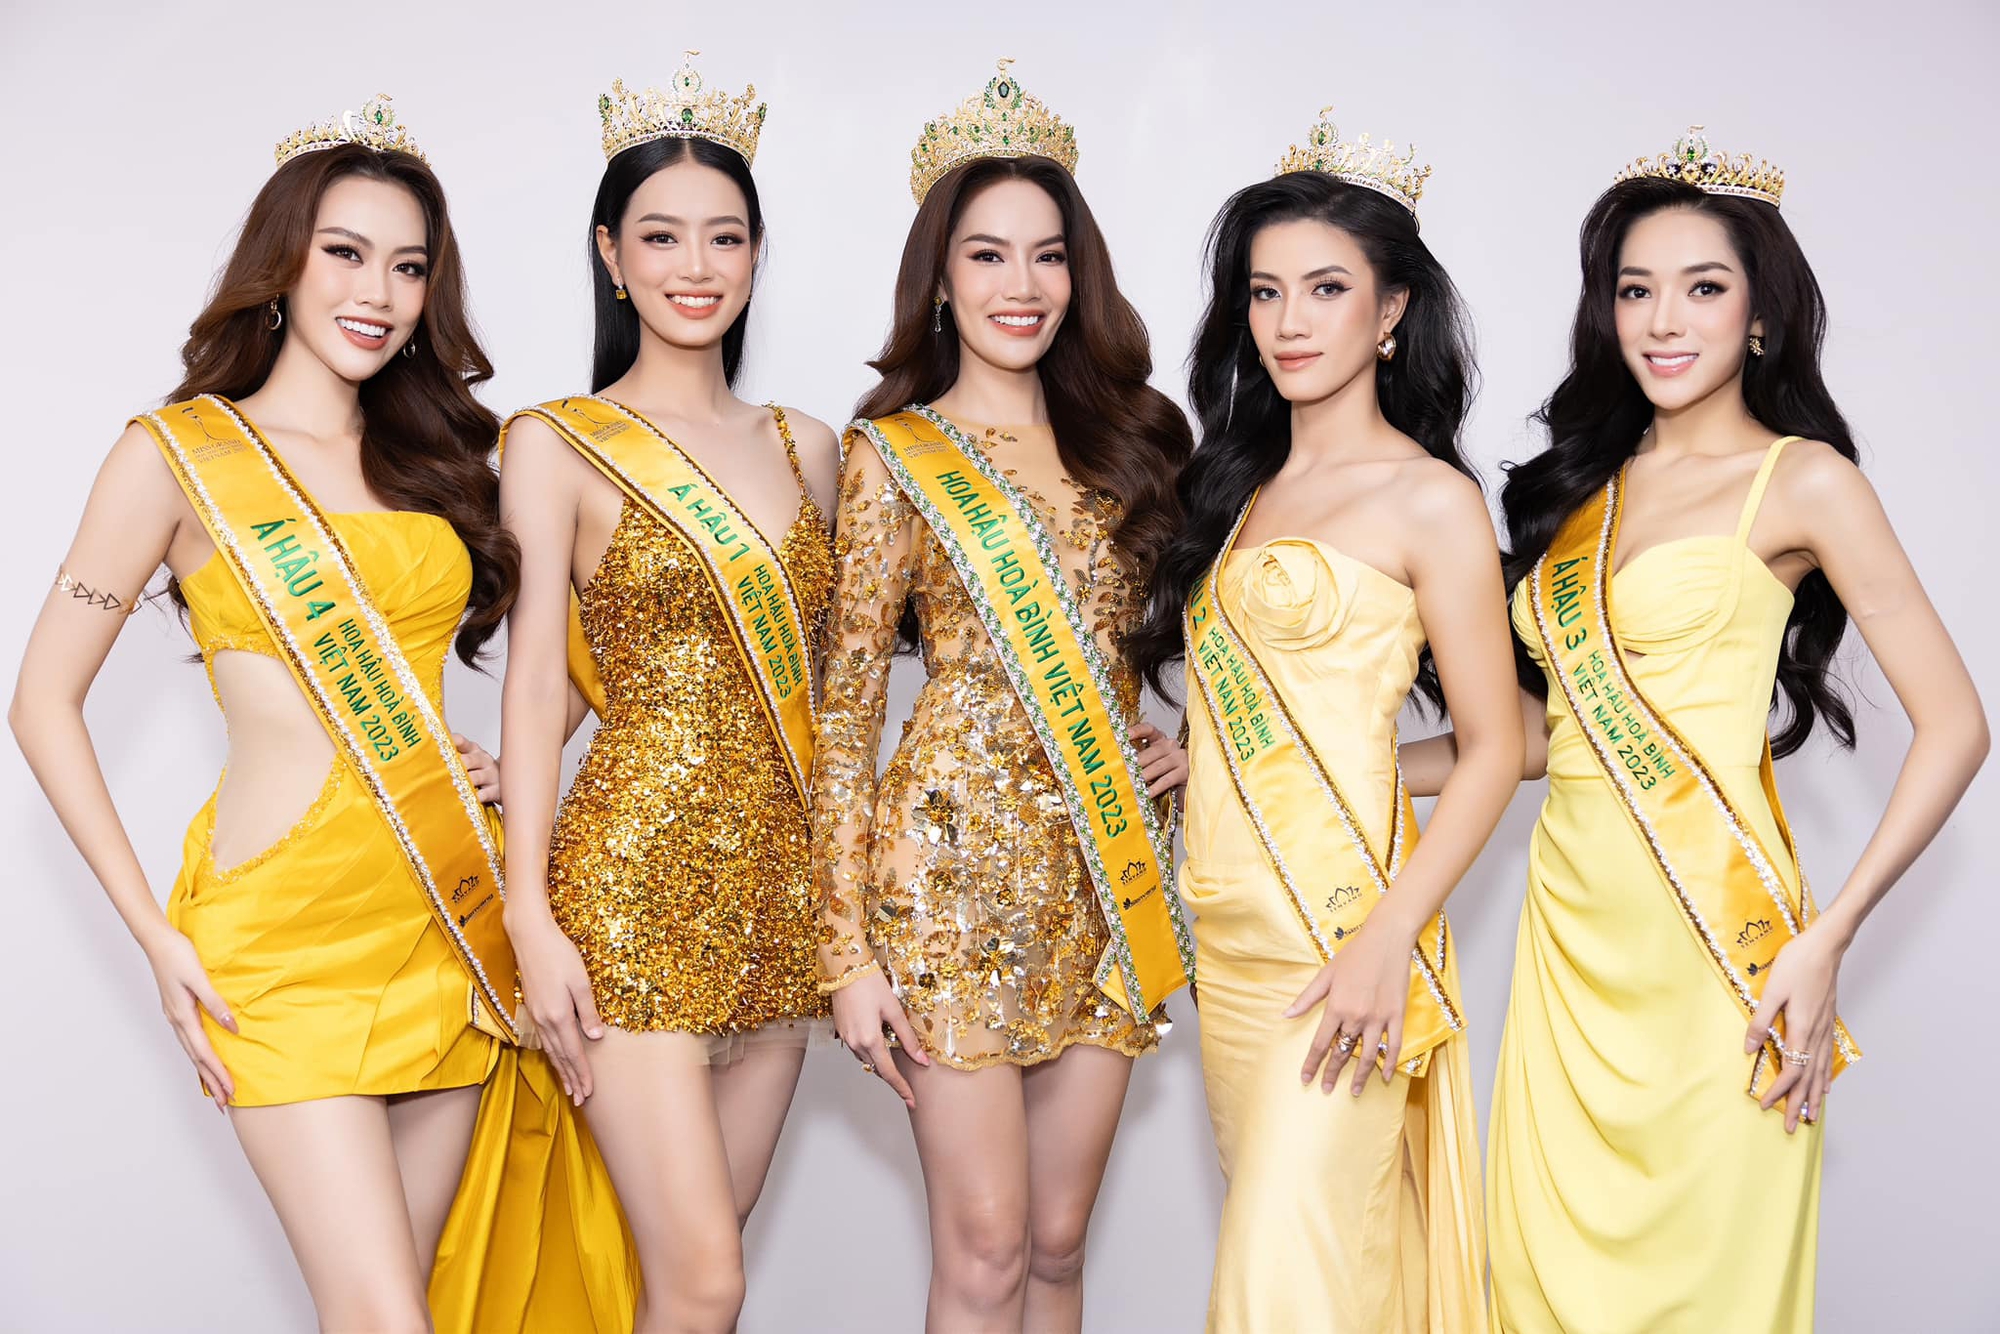 Khung ảnh bùng nổ nhan sắc của Top 5 Miss Grand Vietnam: Lê Hoàng Phương và Bùi Khánh Linh đọ sắc căng đét-6